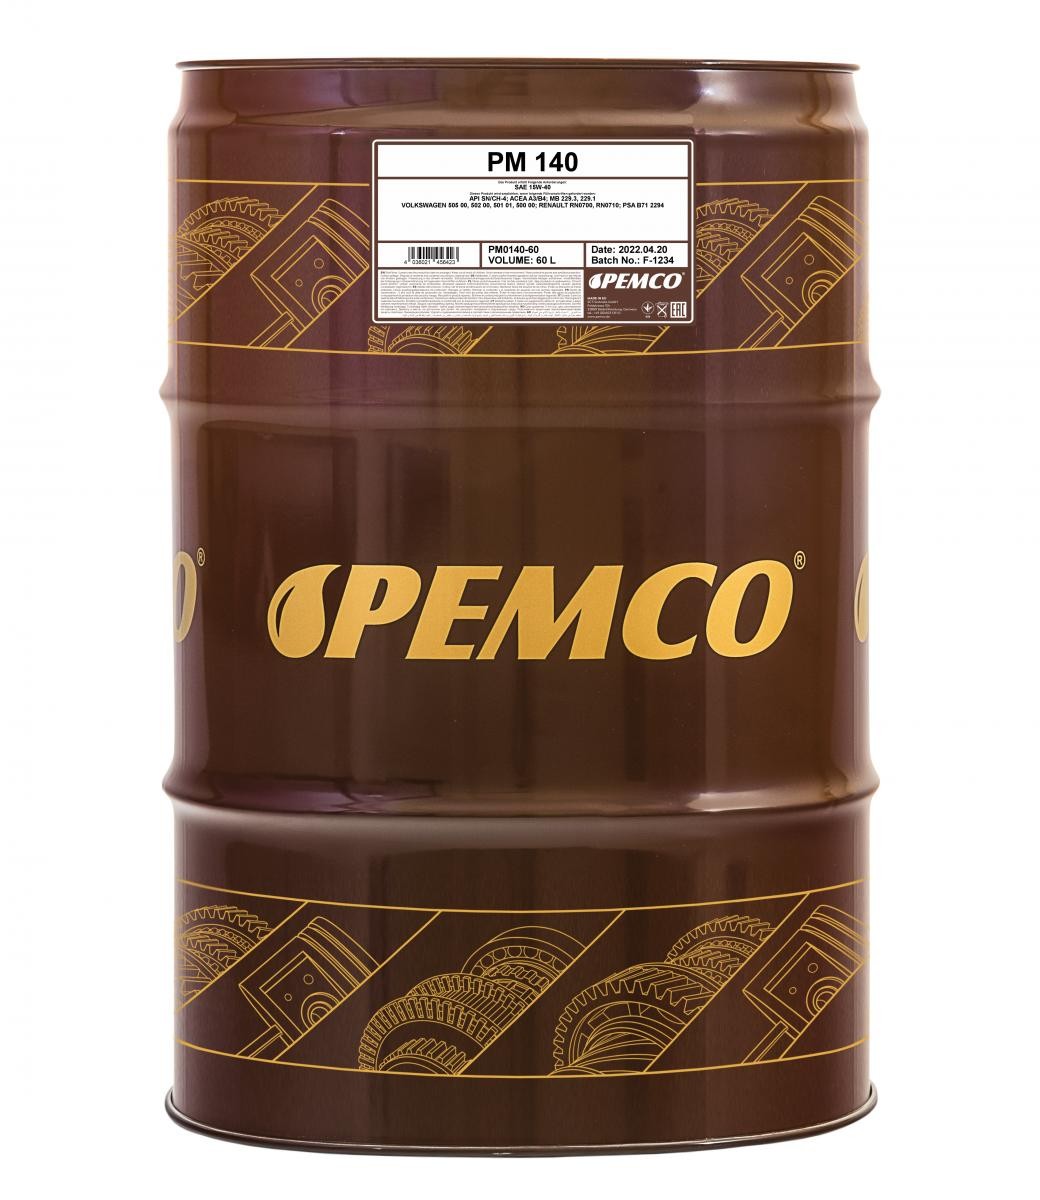 PEMCO iDRIVE 100, iDRIVE 140 PM0140-60 Engine oil 15W-40, 60l, Mineral Oil